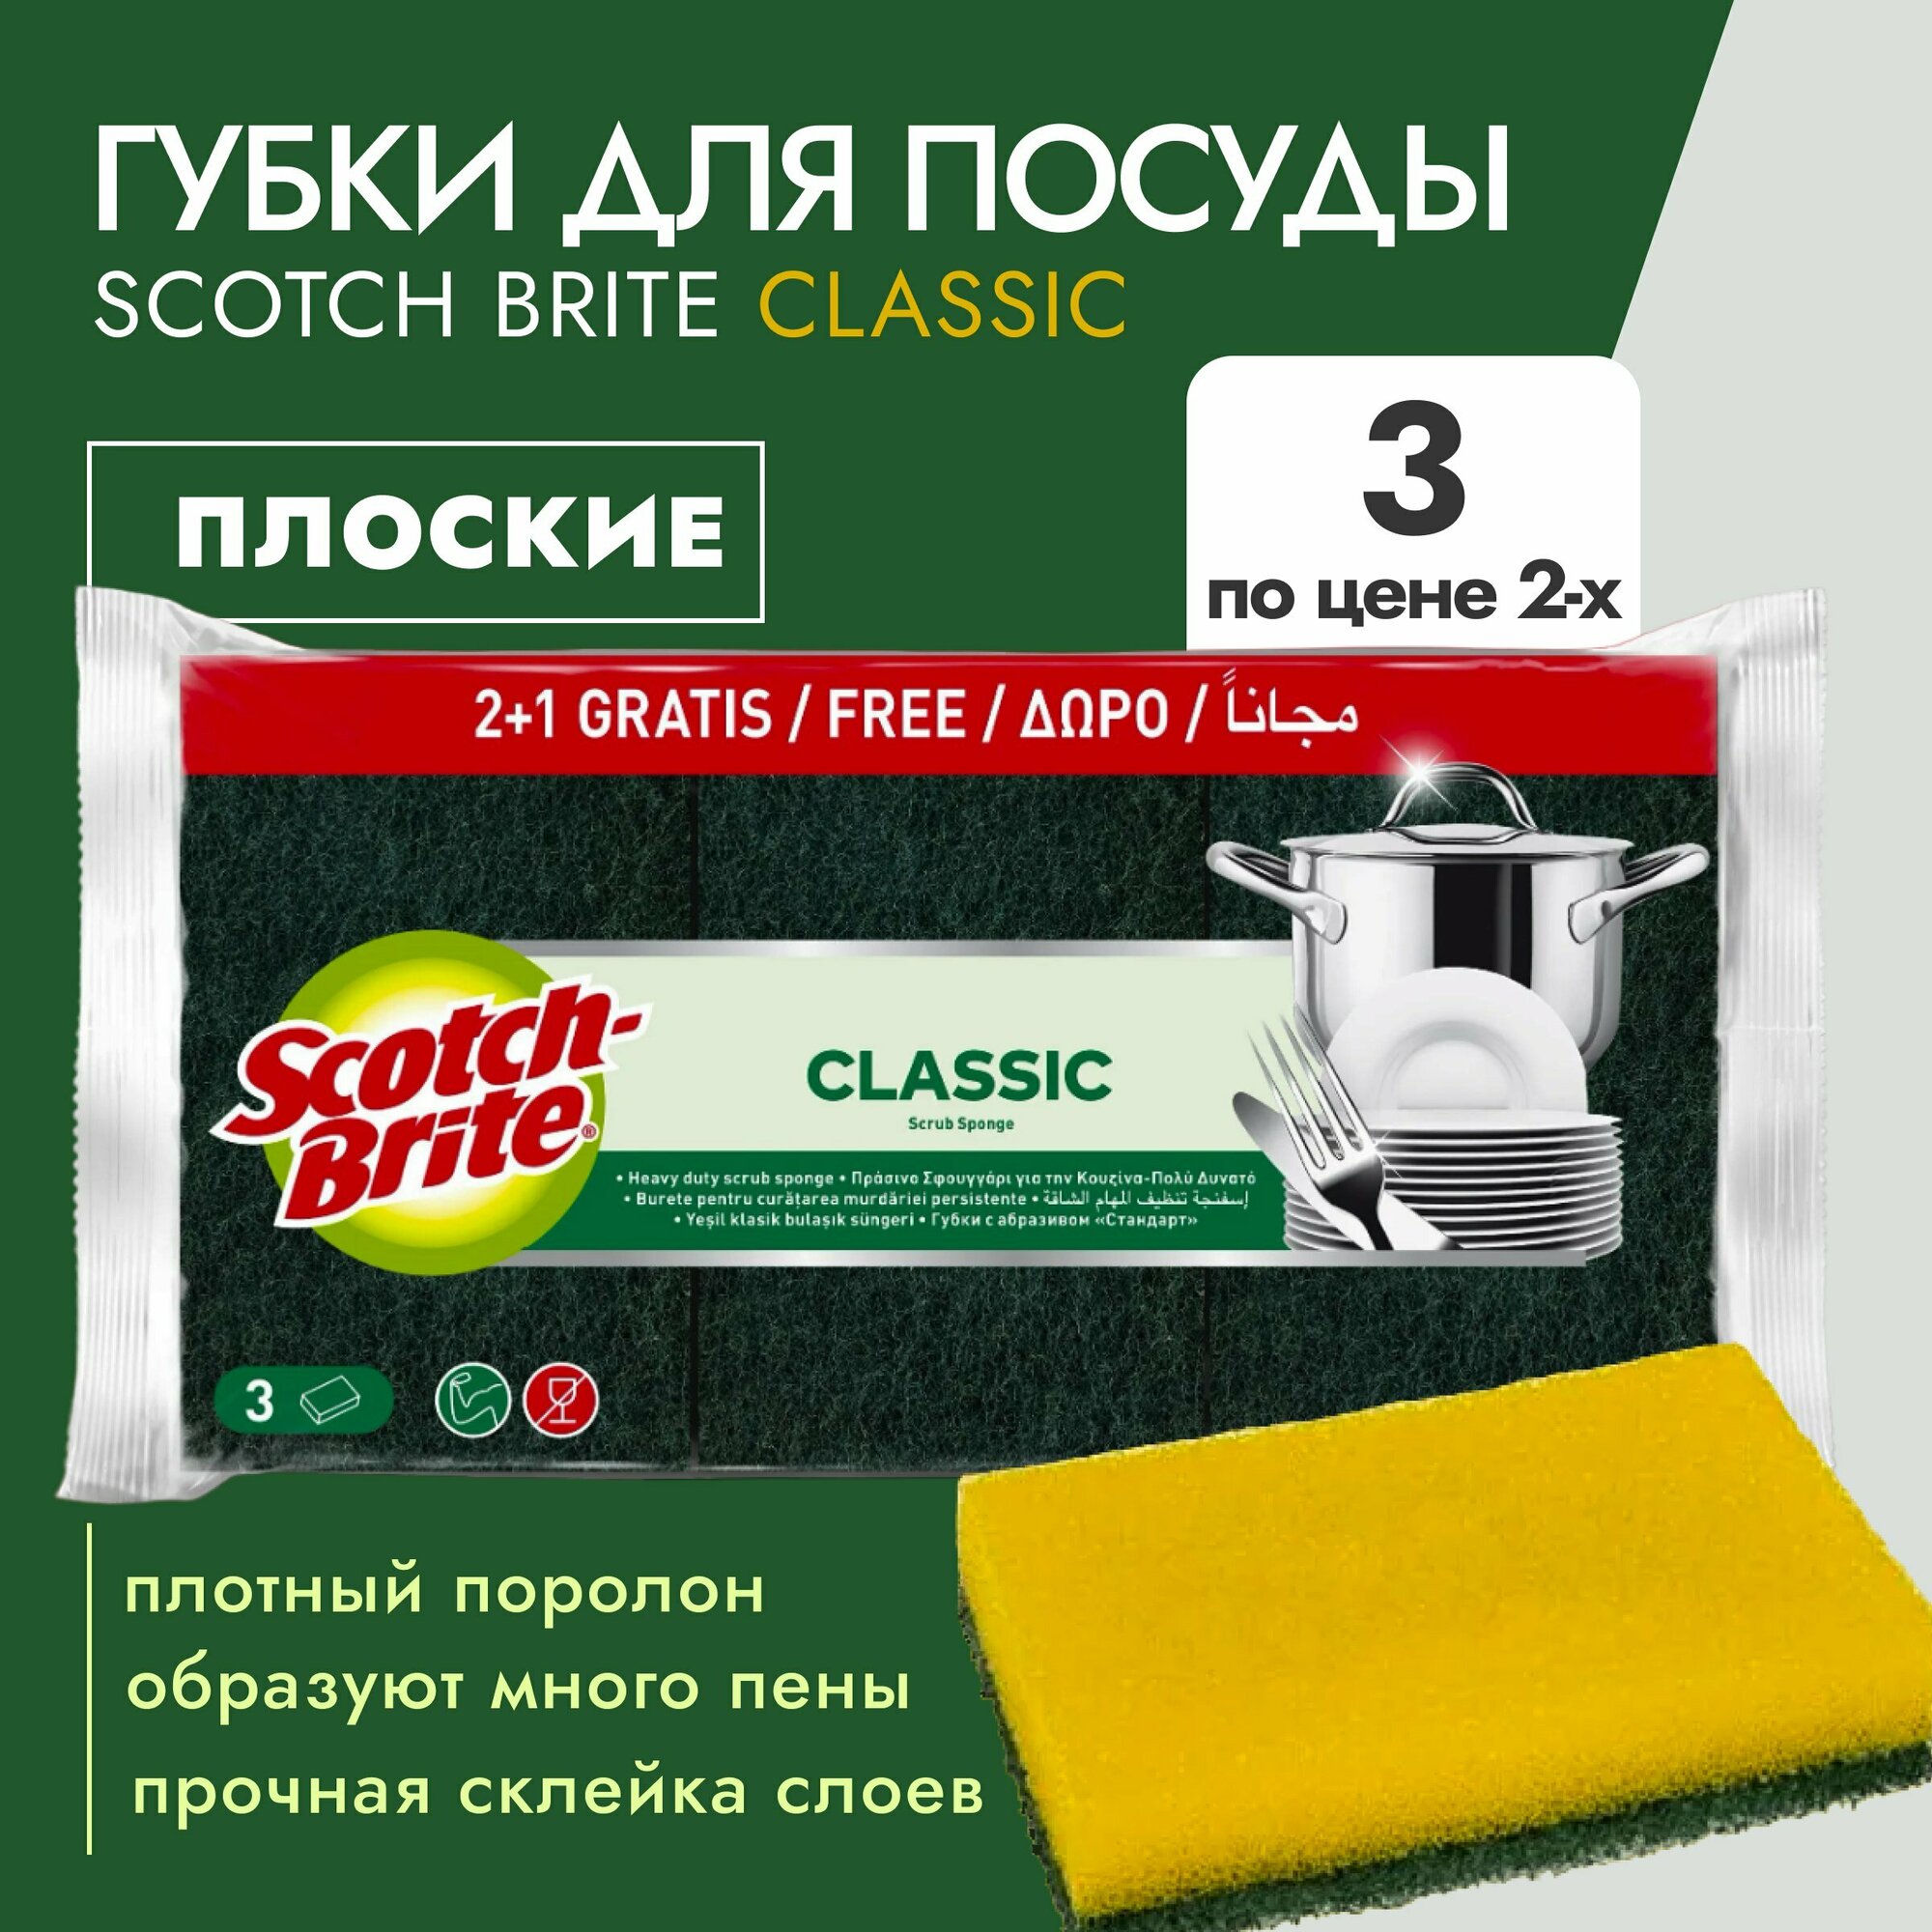 Scotch-Brite (7406) Губки для посуды "Стандарт", плоские 2+1шт - 1уп